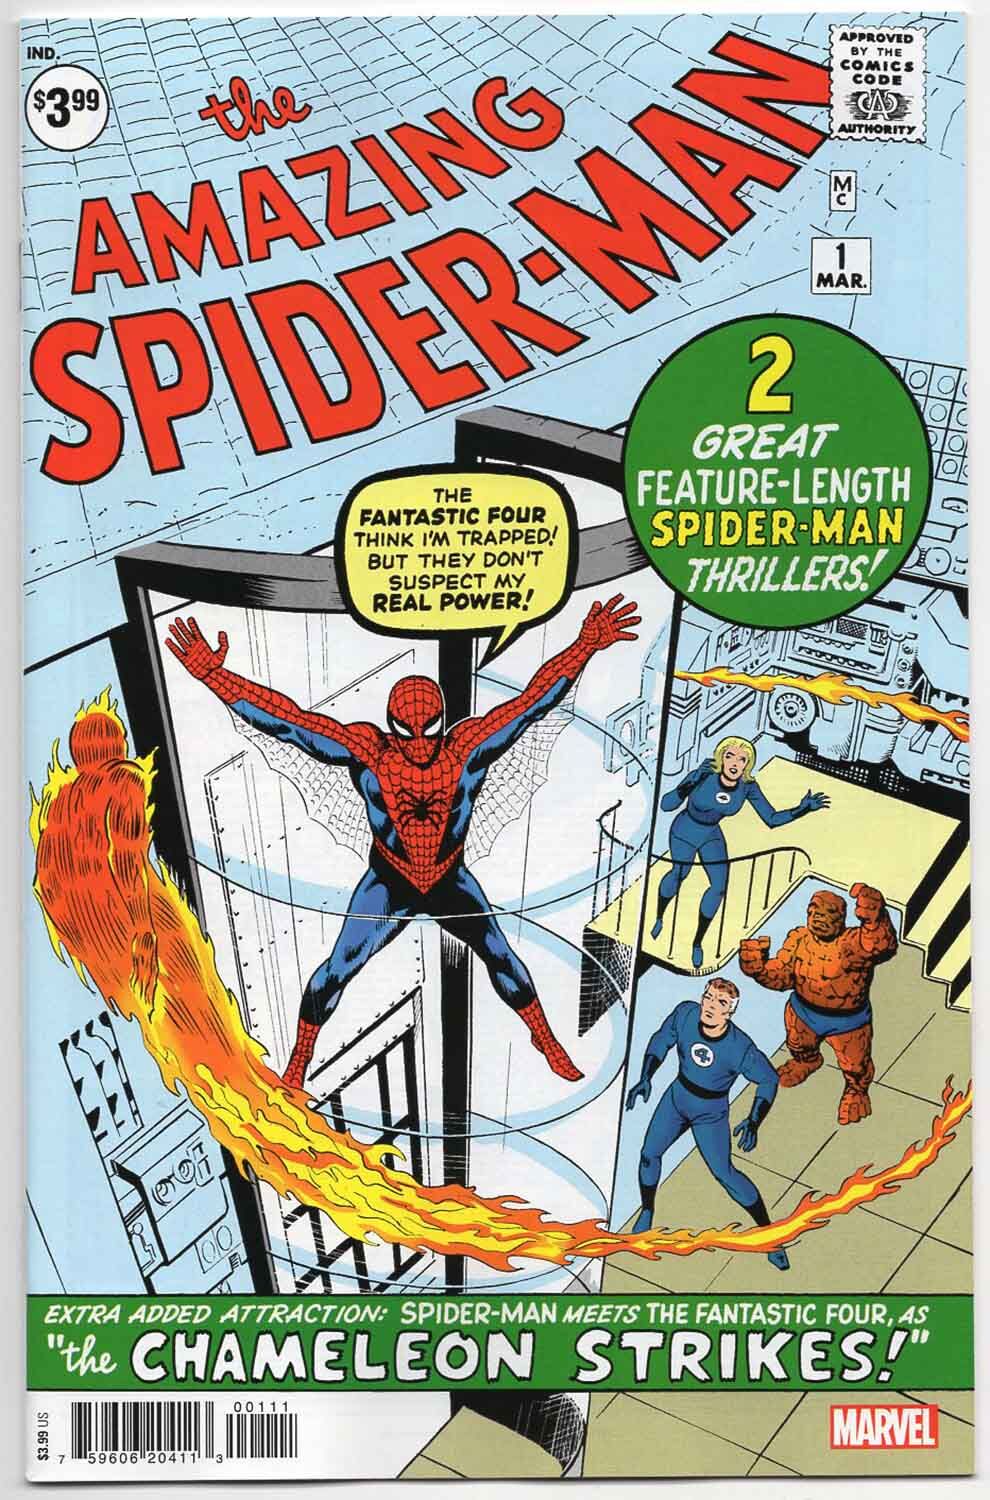 Amazing Spider-Man #1 Facsimile